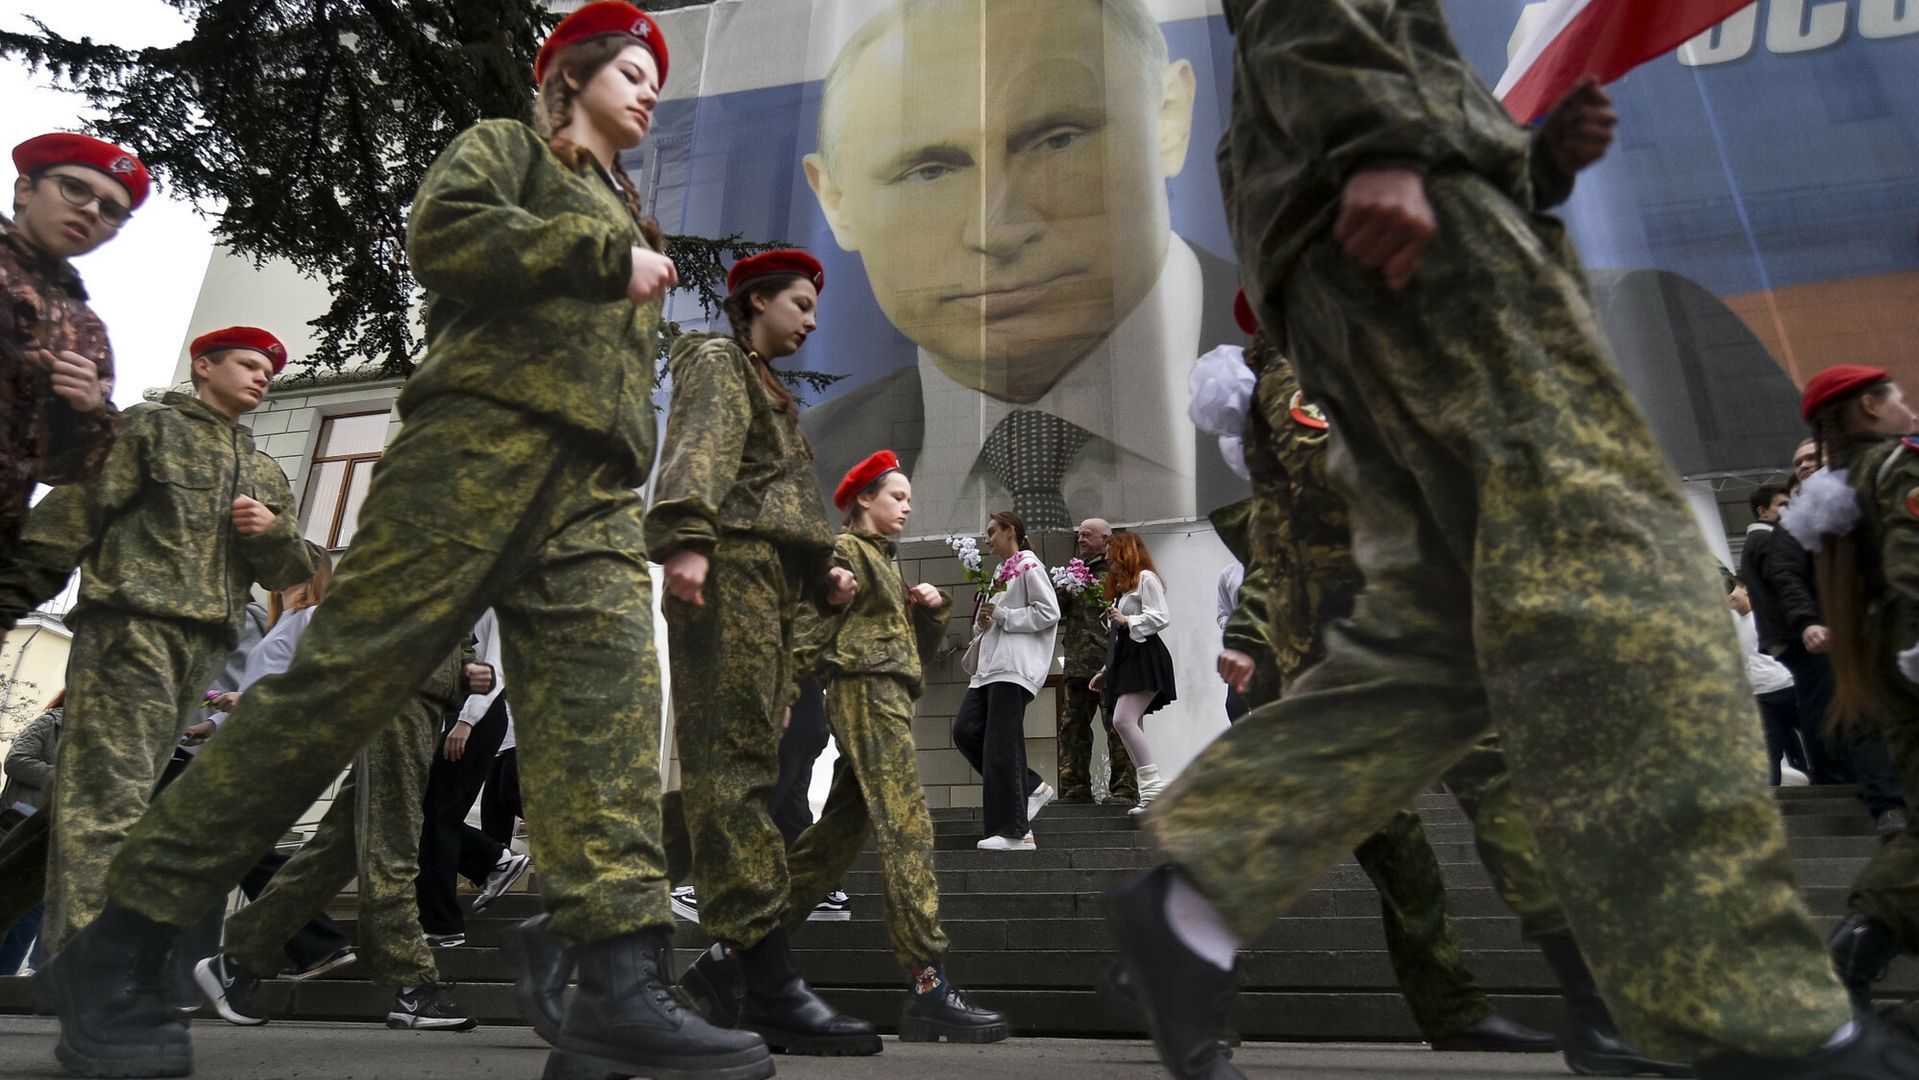 Rosyjska młodzież bierze udział w celebracji 9. rocznicy aneksji Krymu przez Rosję. Na plakacie z podobizną Władimira Putina widnieje napis "Rosja nie zaczyna wojen, Rosja je kończy"